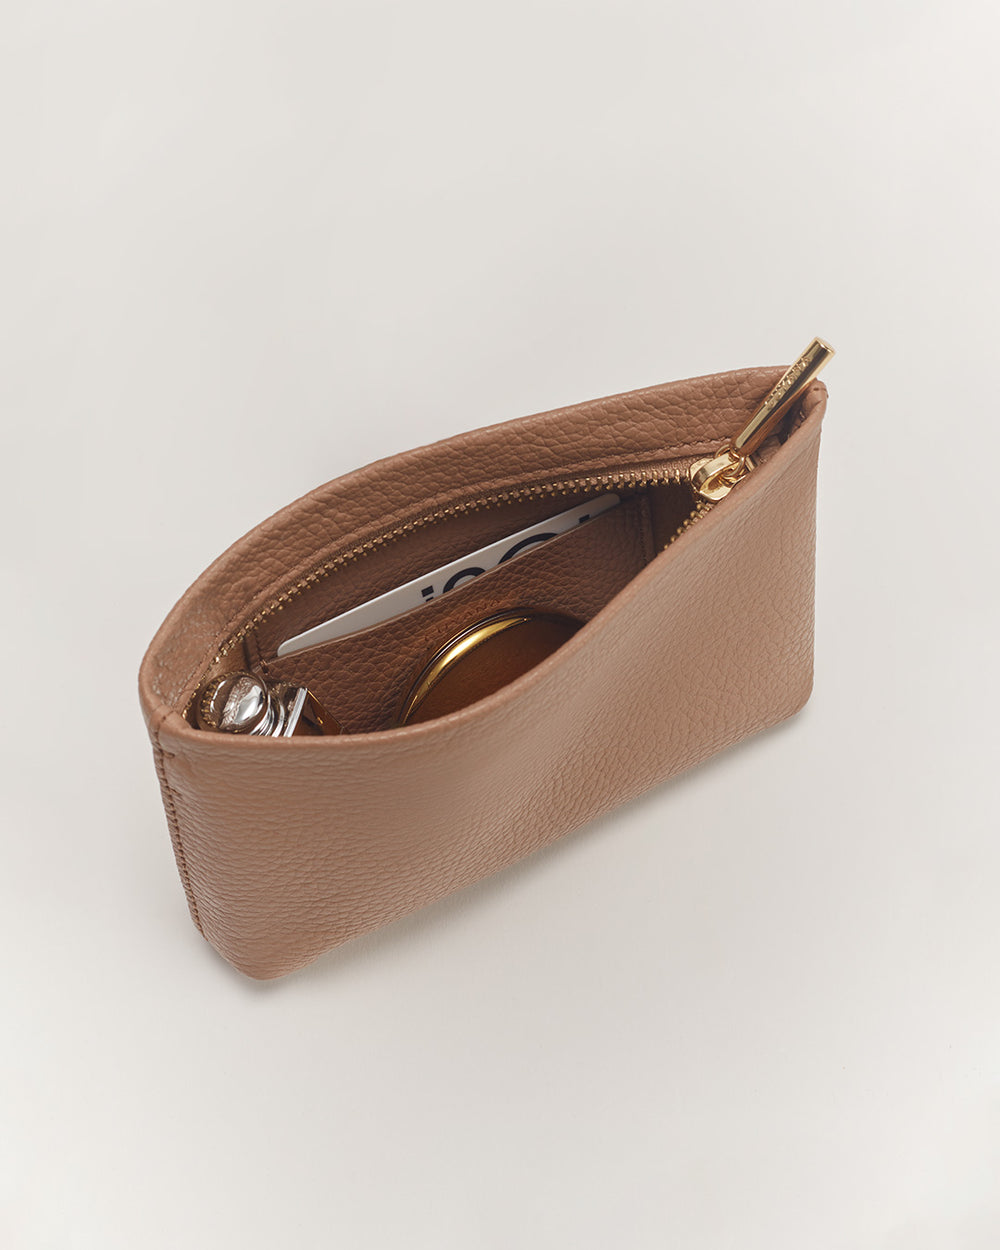 Sunglasses and keys inside an open zipper pouch.